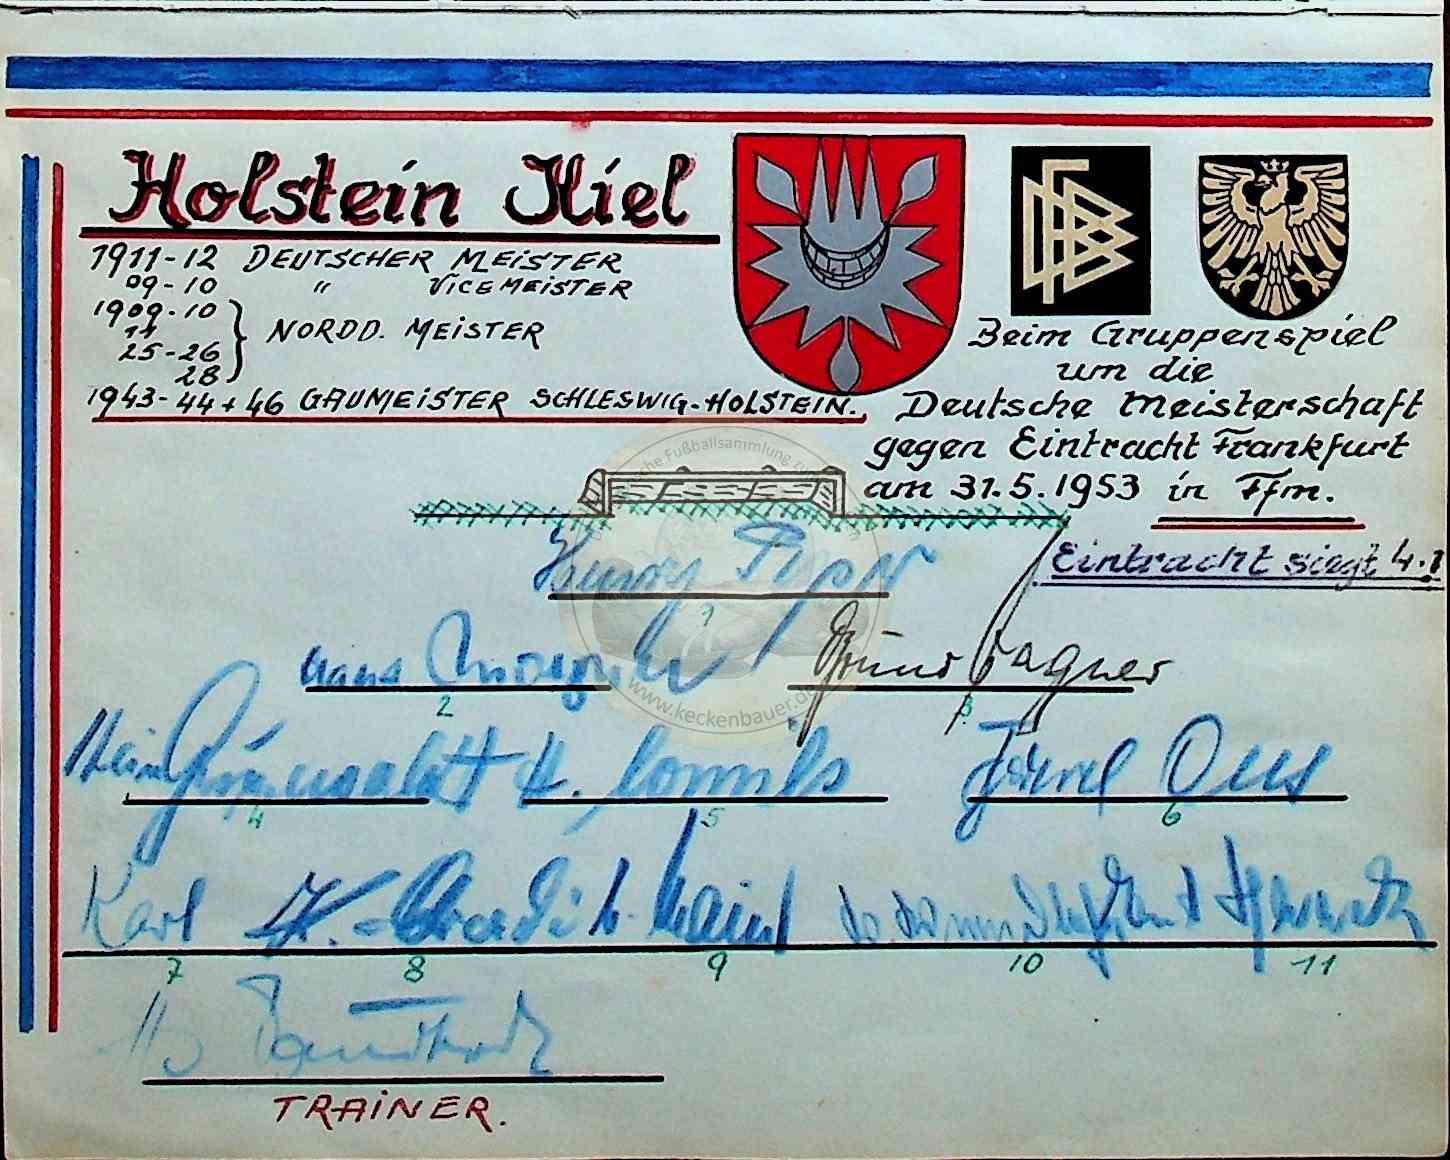 19530531 Autogramme Holstein Kiel beim Gruppenspiel gegen Frankfurt